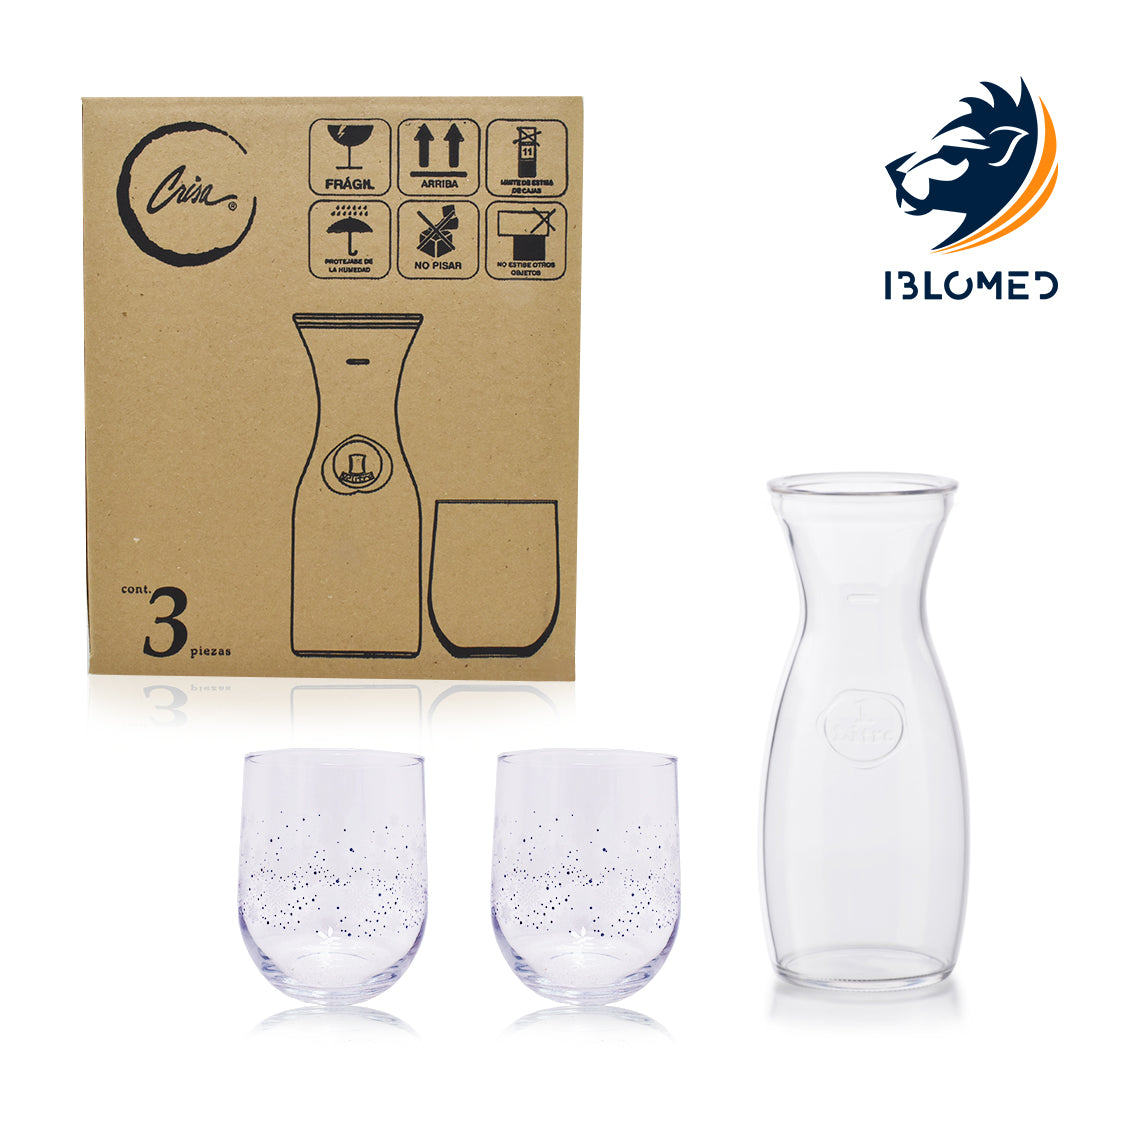 juego de vasos sprayed collins 532ml — Iblomed Cristalería